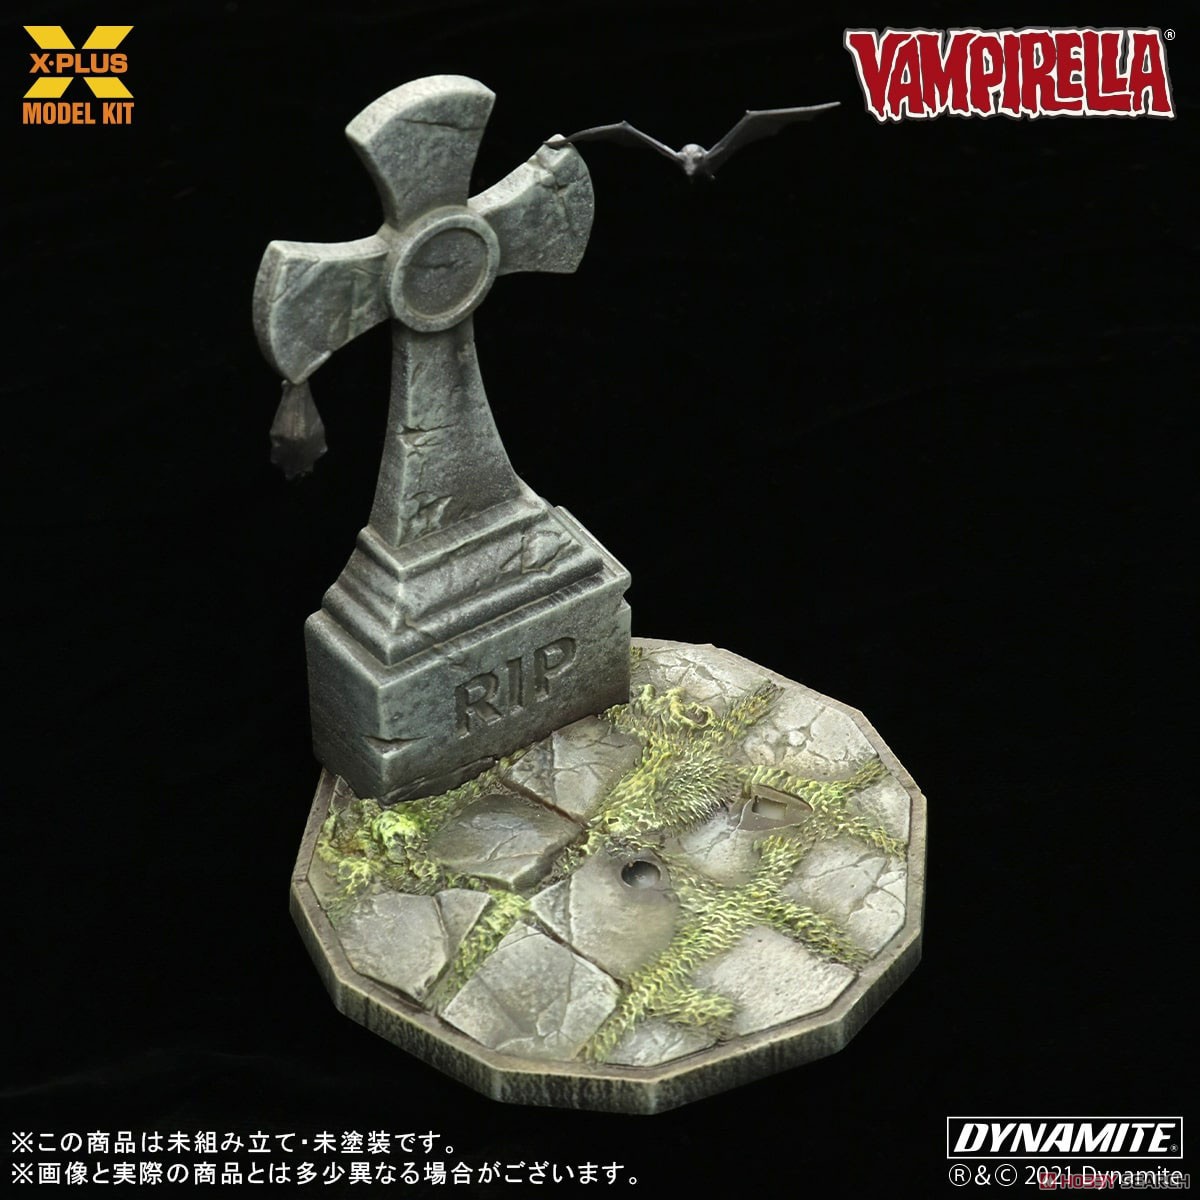 Vampirella『ヴァンピレラ 』1/8スケール プラスチック モデルキット-007